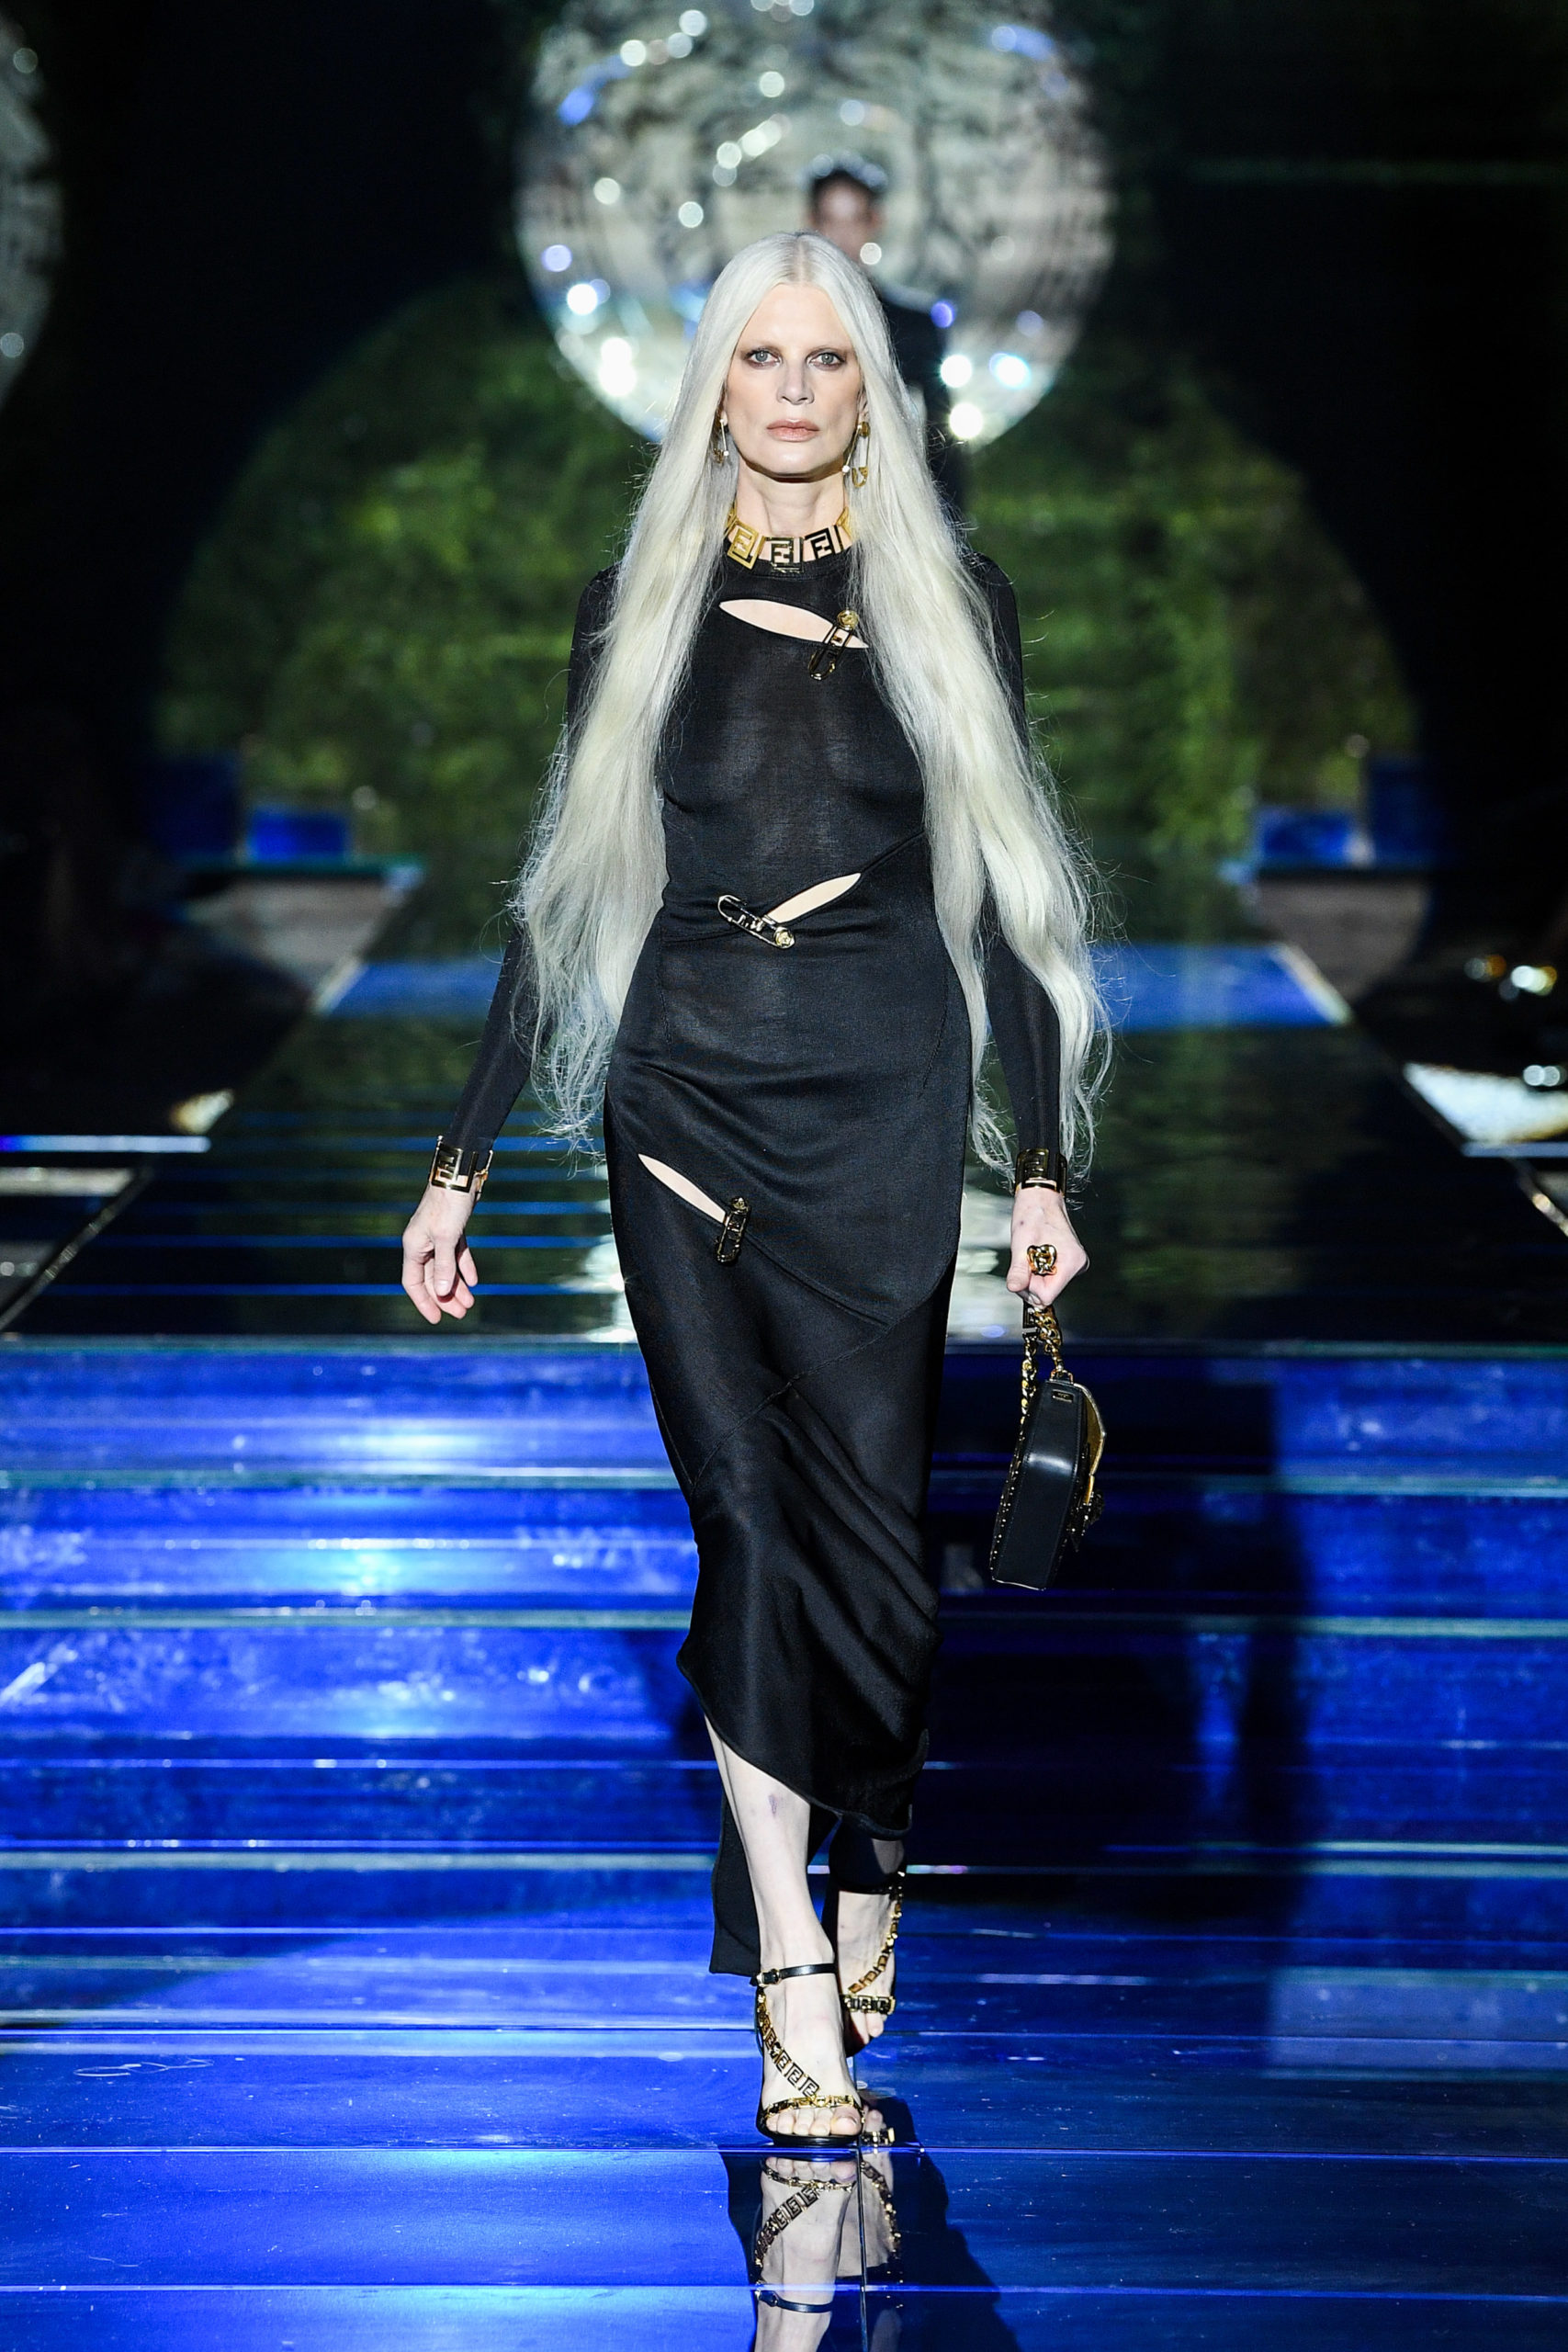 Versace and Fendi: Fendace - Adv Campaign